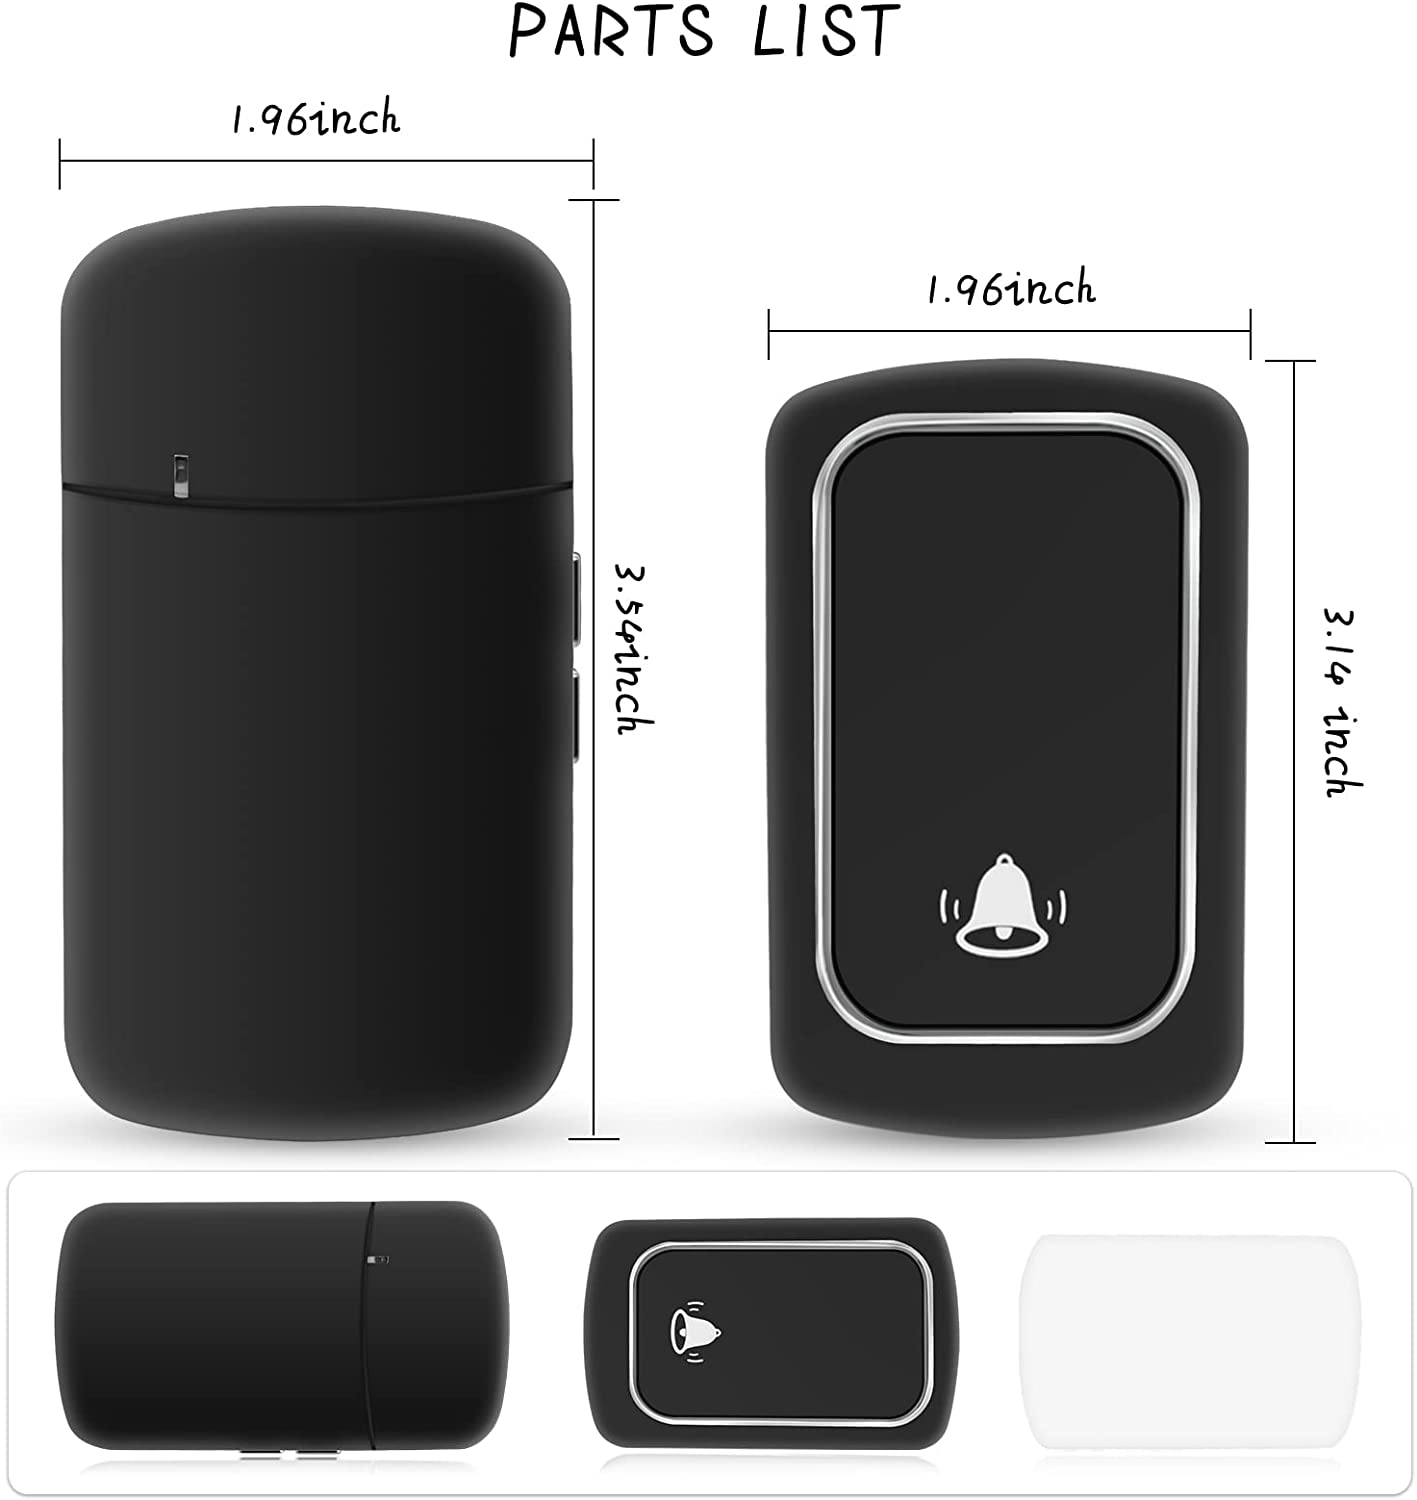 Waterproof Battery-Free Wireless Doorbell